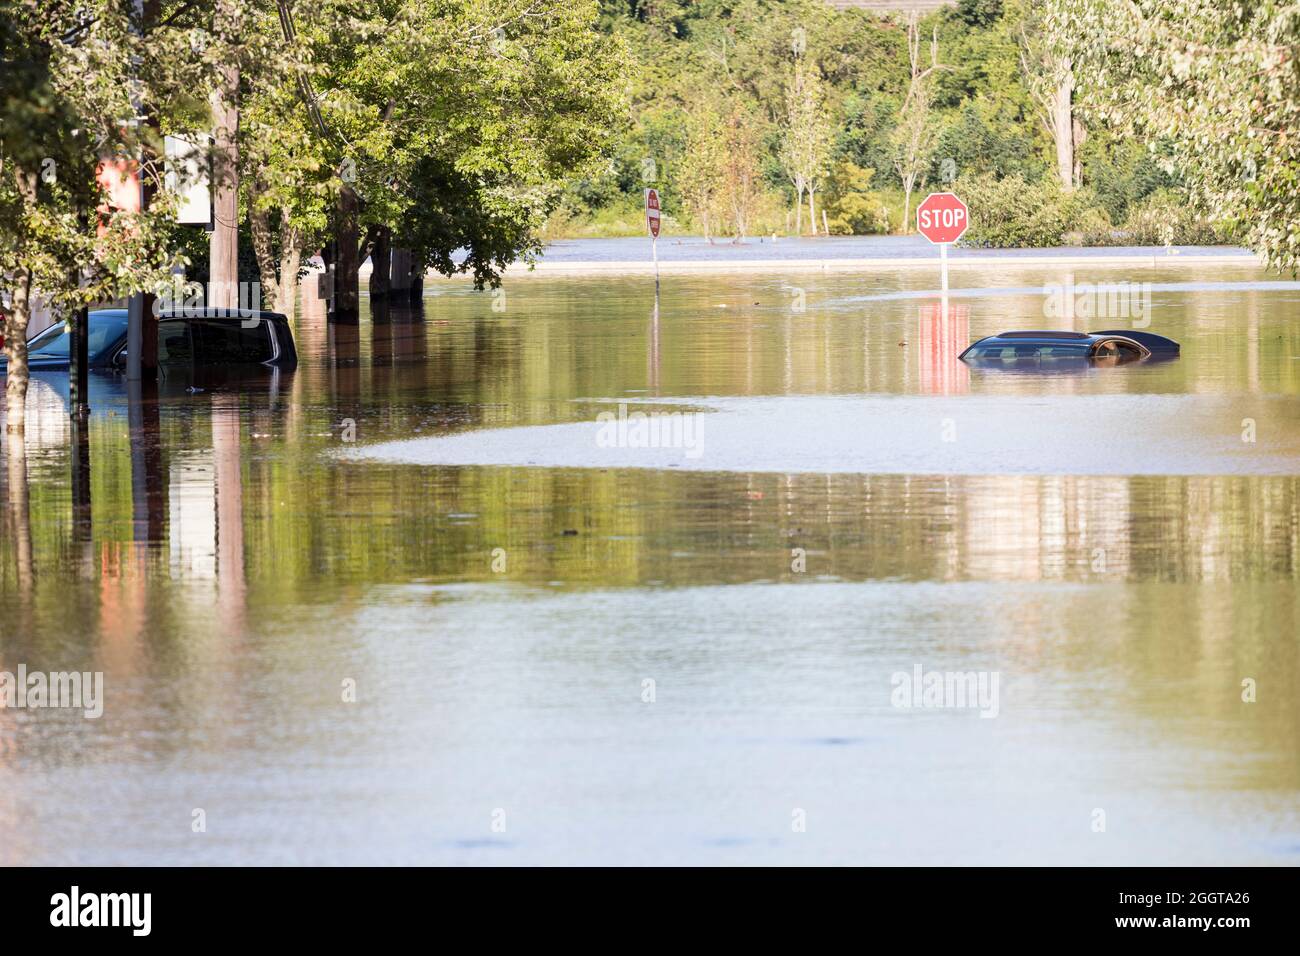 Le auto parcheggiate nei pressi del fiume Raritan sommerse sotto l'acqua dopo l'uragano Ida. Foto Stock